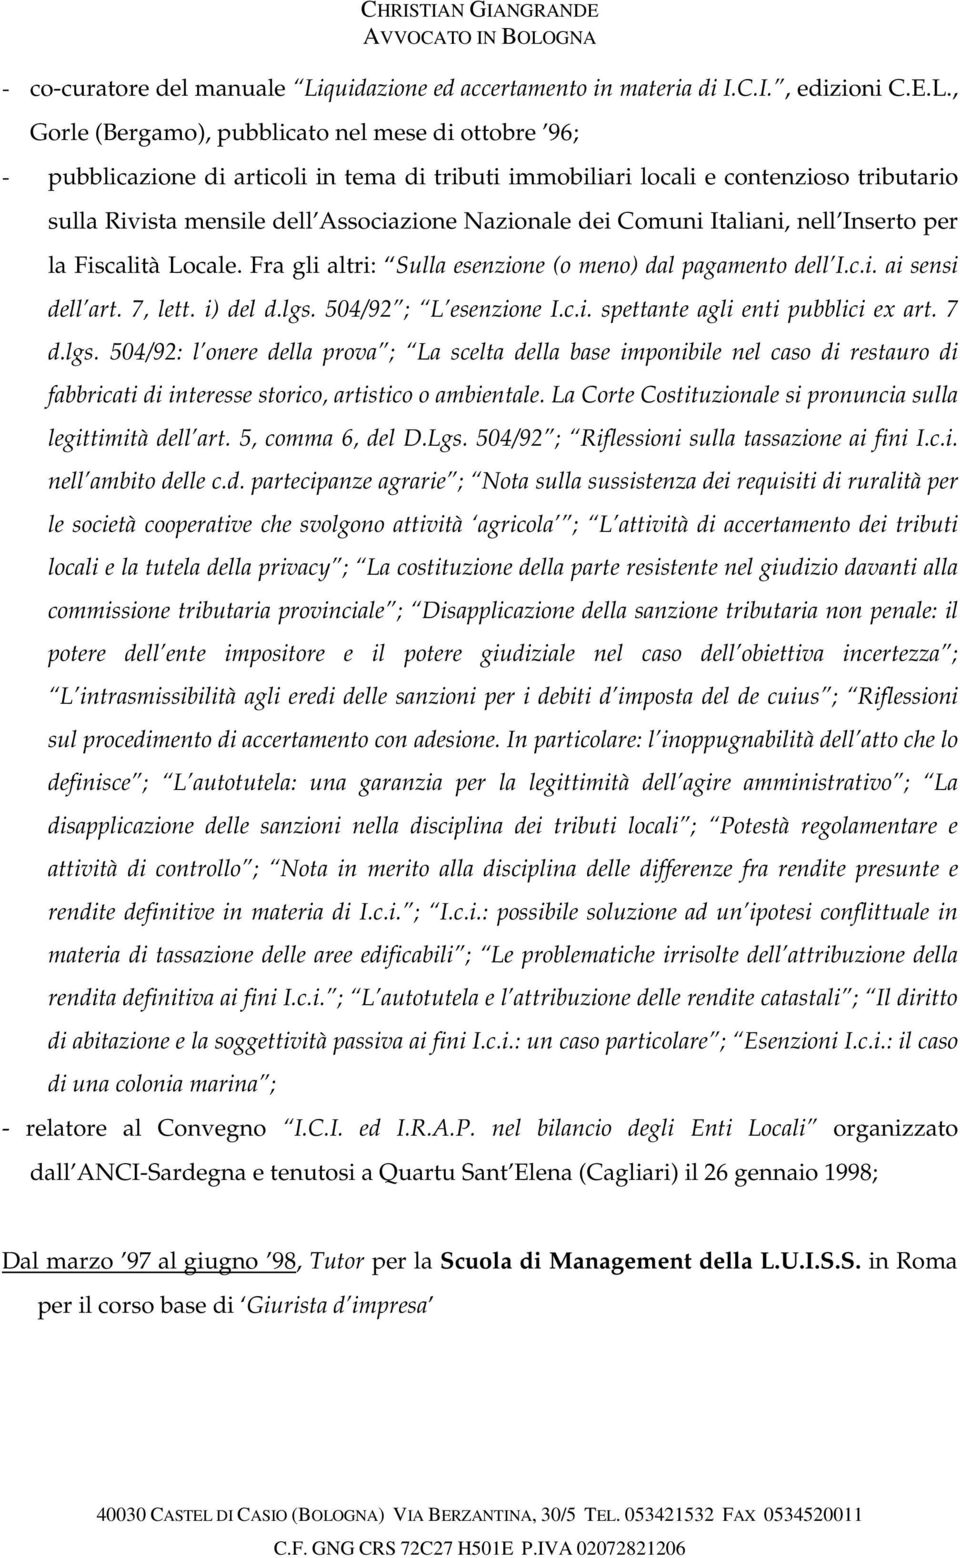 , Gorle (Bergamo), pubblicato nel mese di ottobre 96; - pubblicazione di articoli in tema di tributi immobiliari locali e contenzioso tributario sulla Rivista mensile dell Associazione Nazionale dei